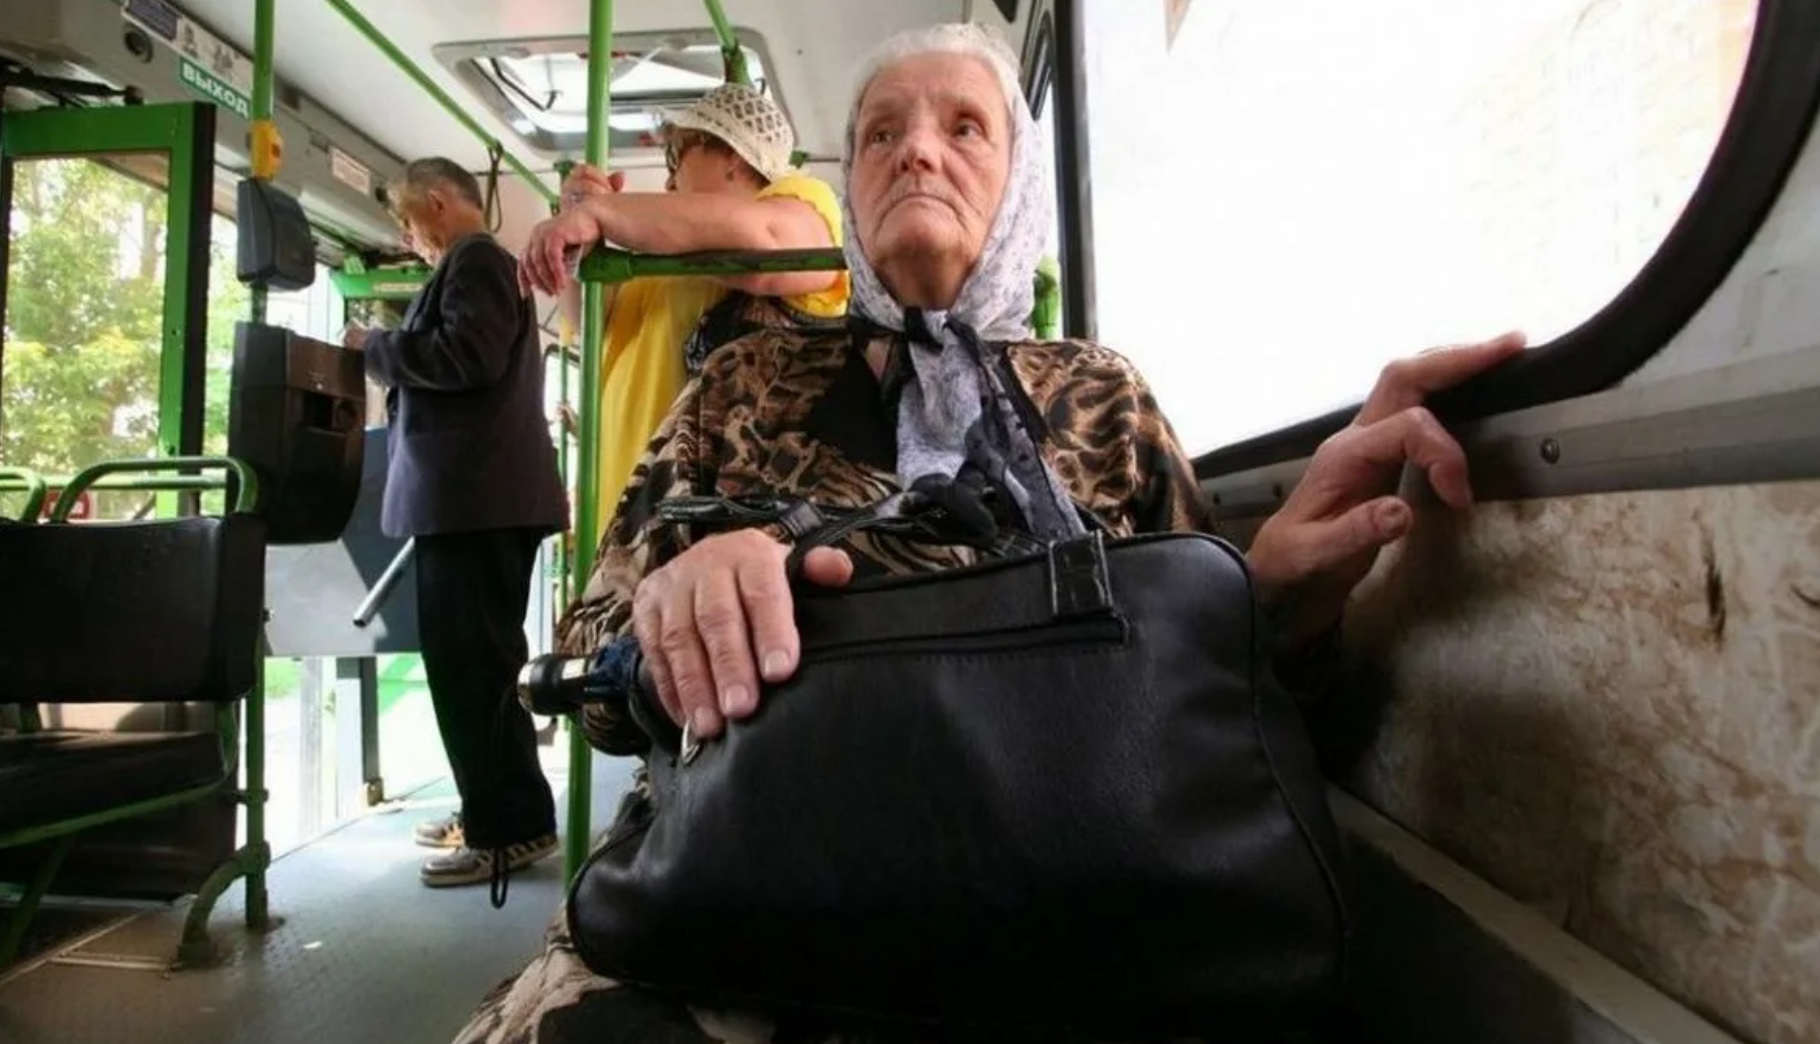 Бесплатный проезд для пенсионеров в московской области. Пенсионеры в автобусе. Пожилые люди в общественном транспорте. Транспорт для пожилых людей. Бабки в общественном транспорте.